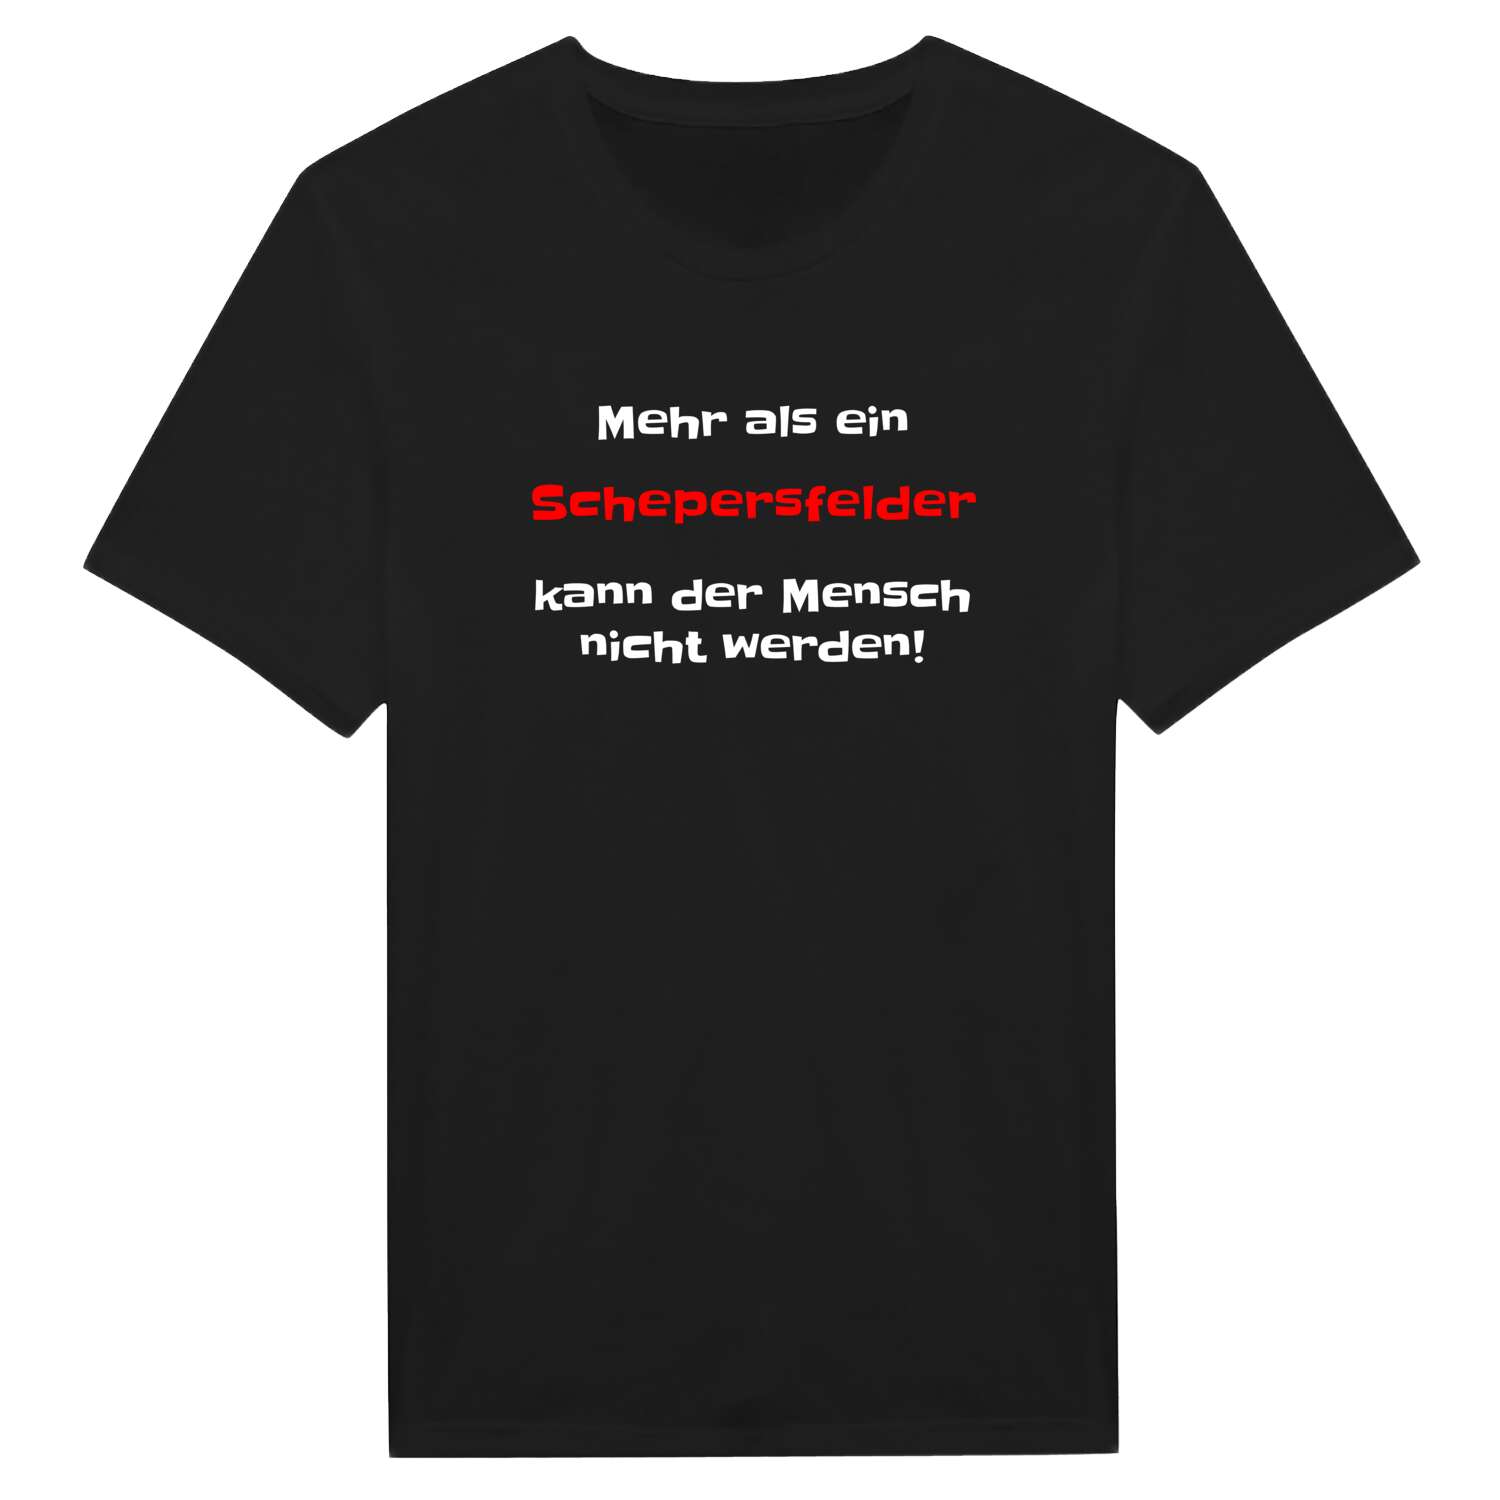 Schepersfeld T-Shirt »Mehr als ein«